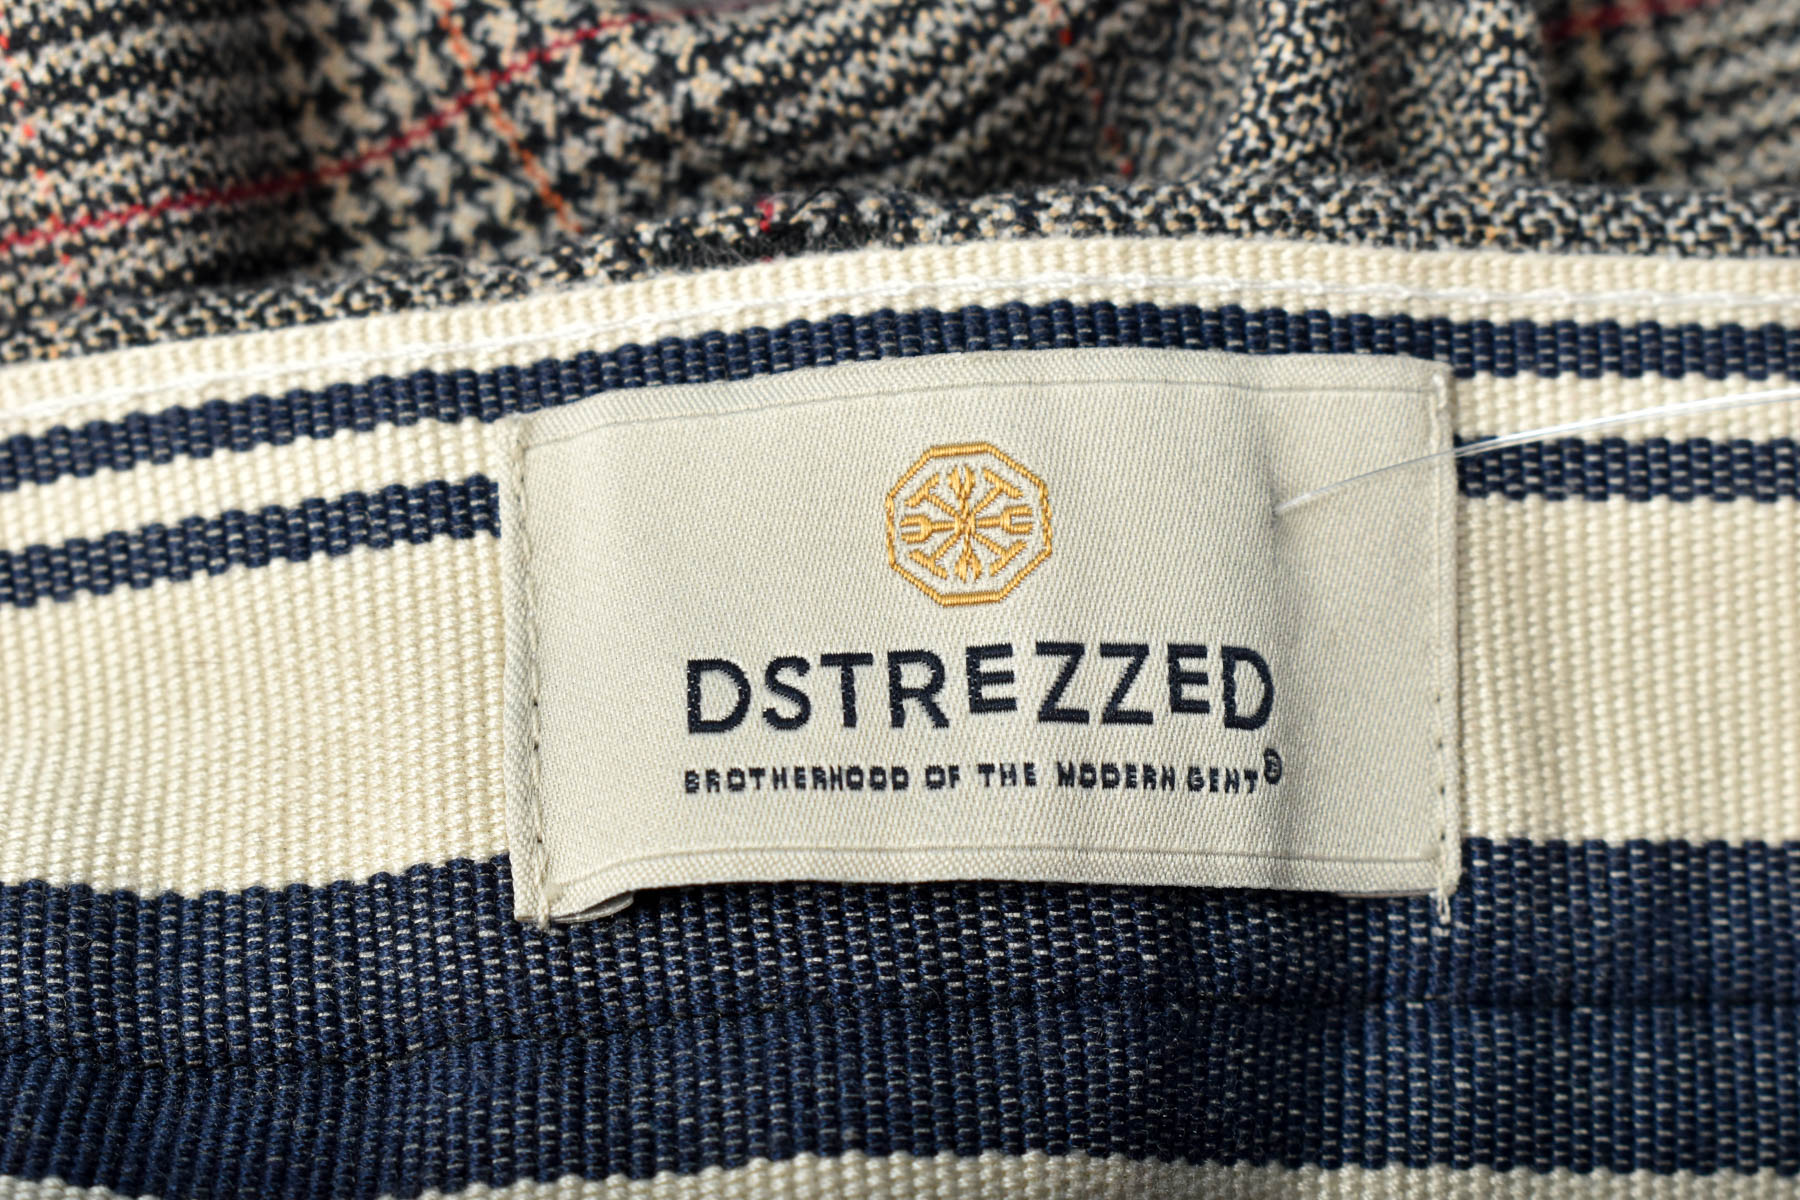 Men's trousers - DstreZZed - 2